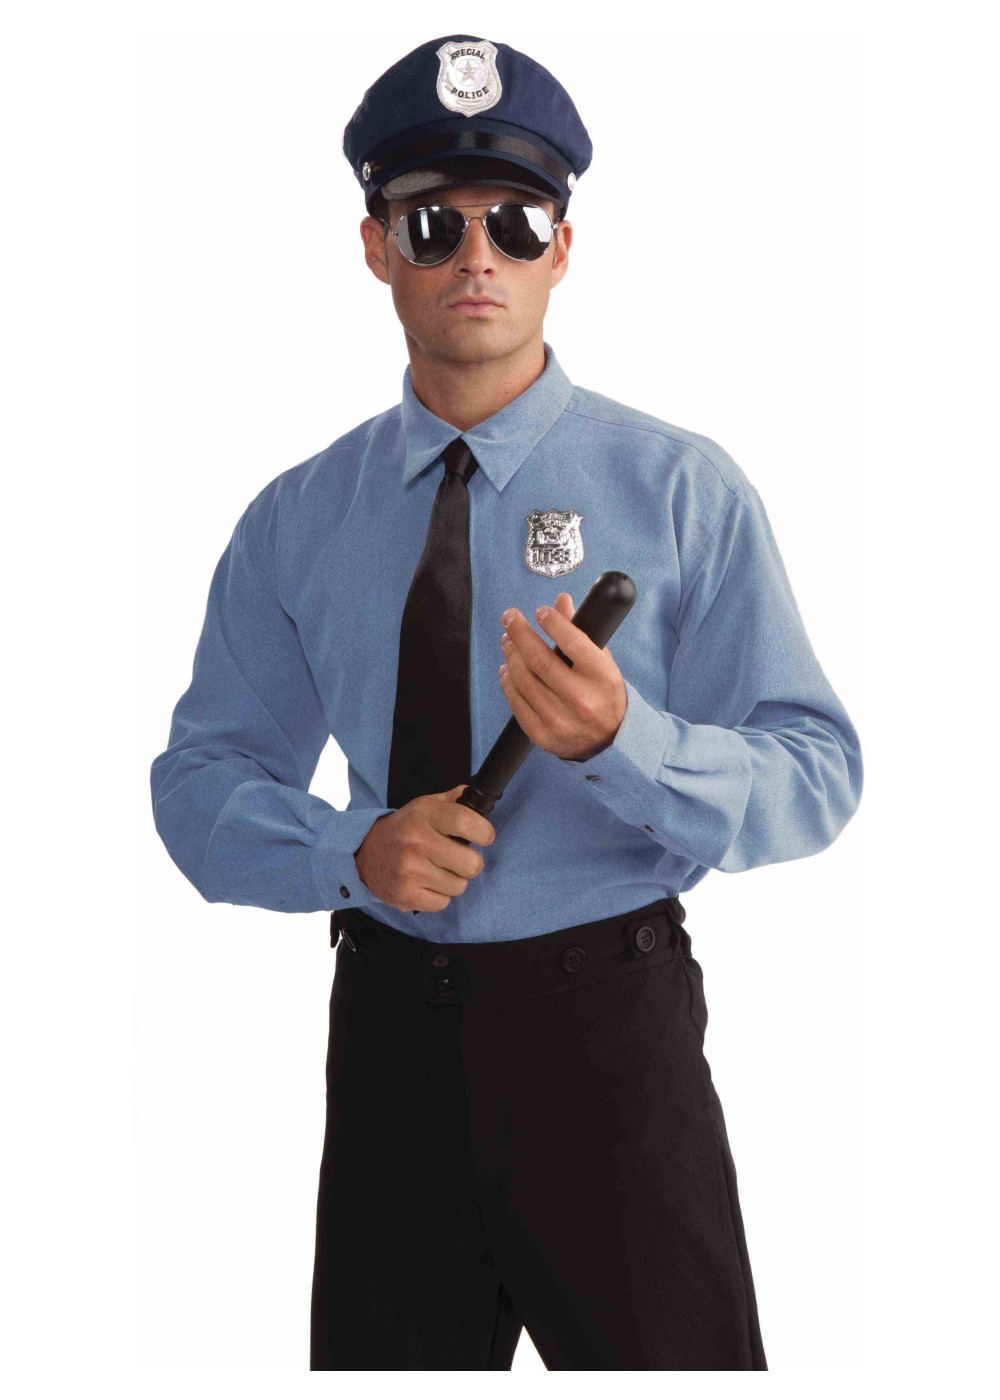 Police Officer Kit